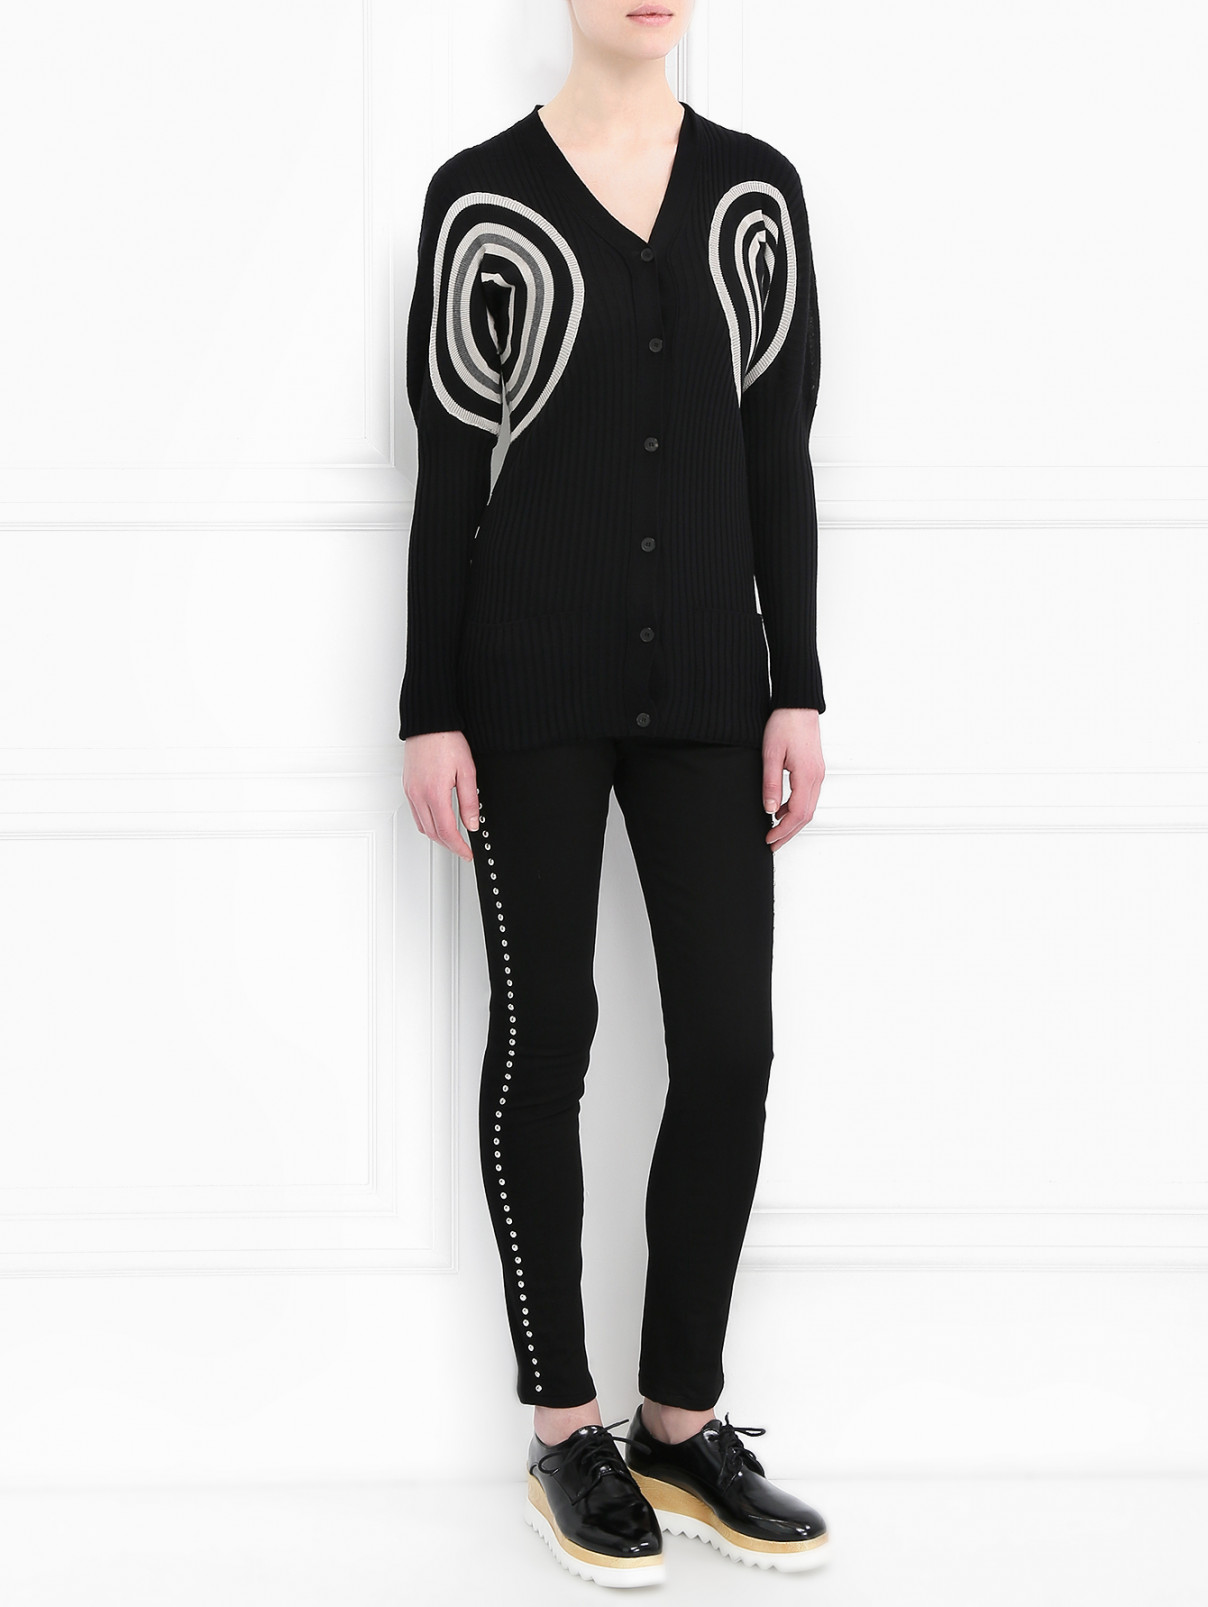 Кардиган из шерсти с узором "полоска" Jean Paul Gaultier  –  Модель Общий вид  – Цвет:  Черный